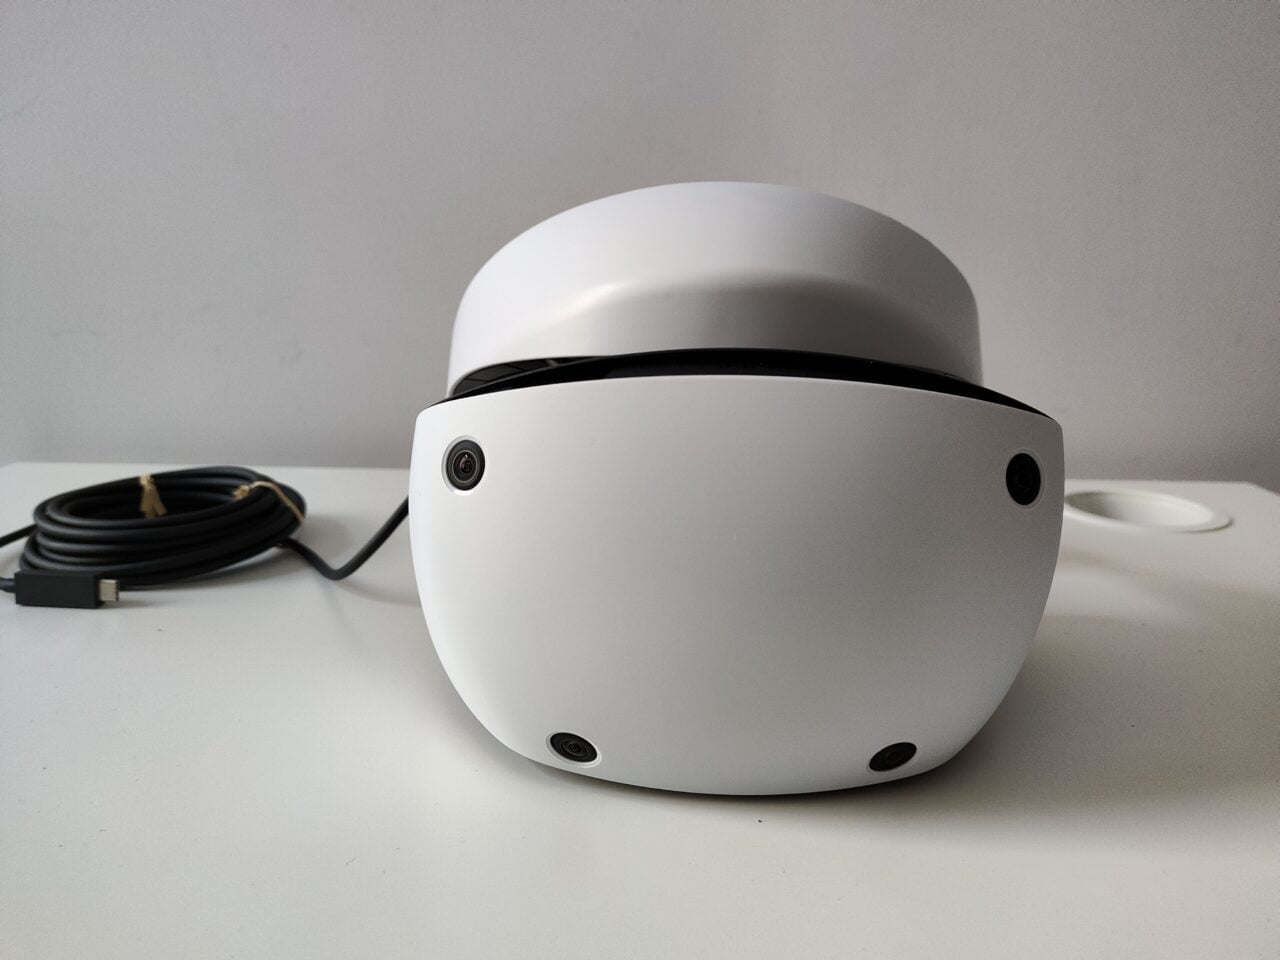 Gogle PlayStation VR2 na białym blacie, na tle białej ściany